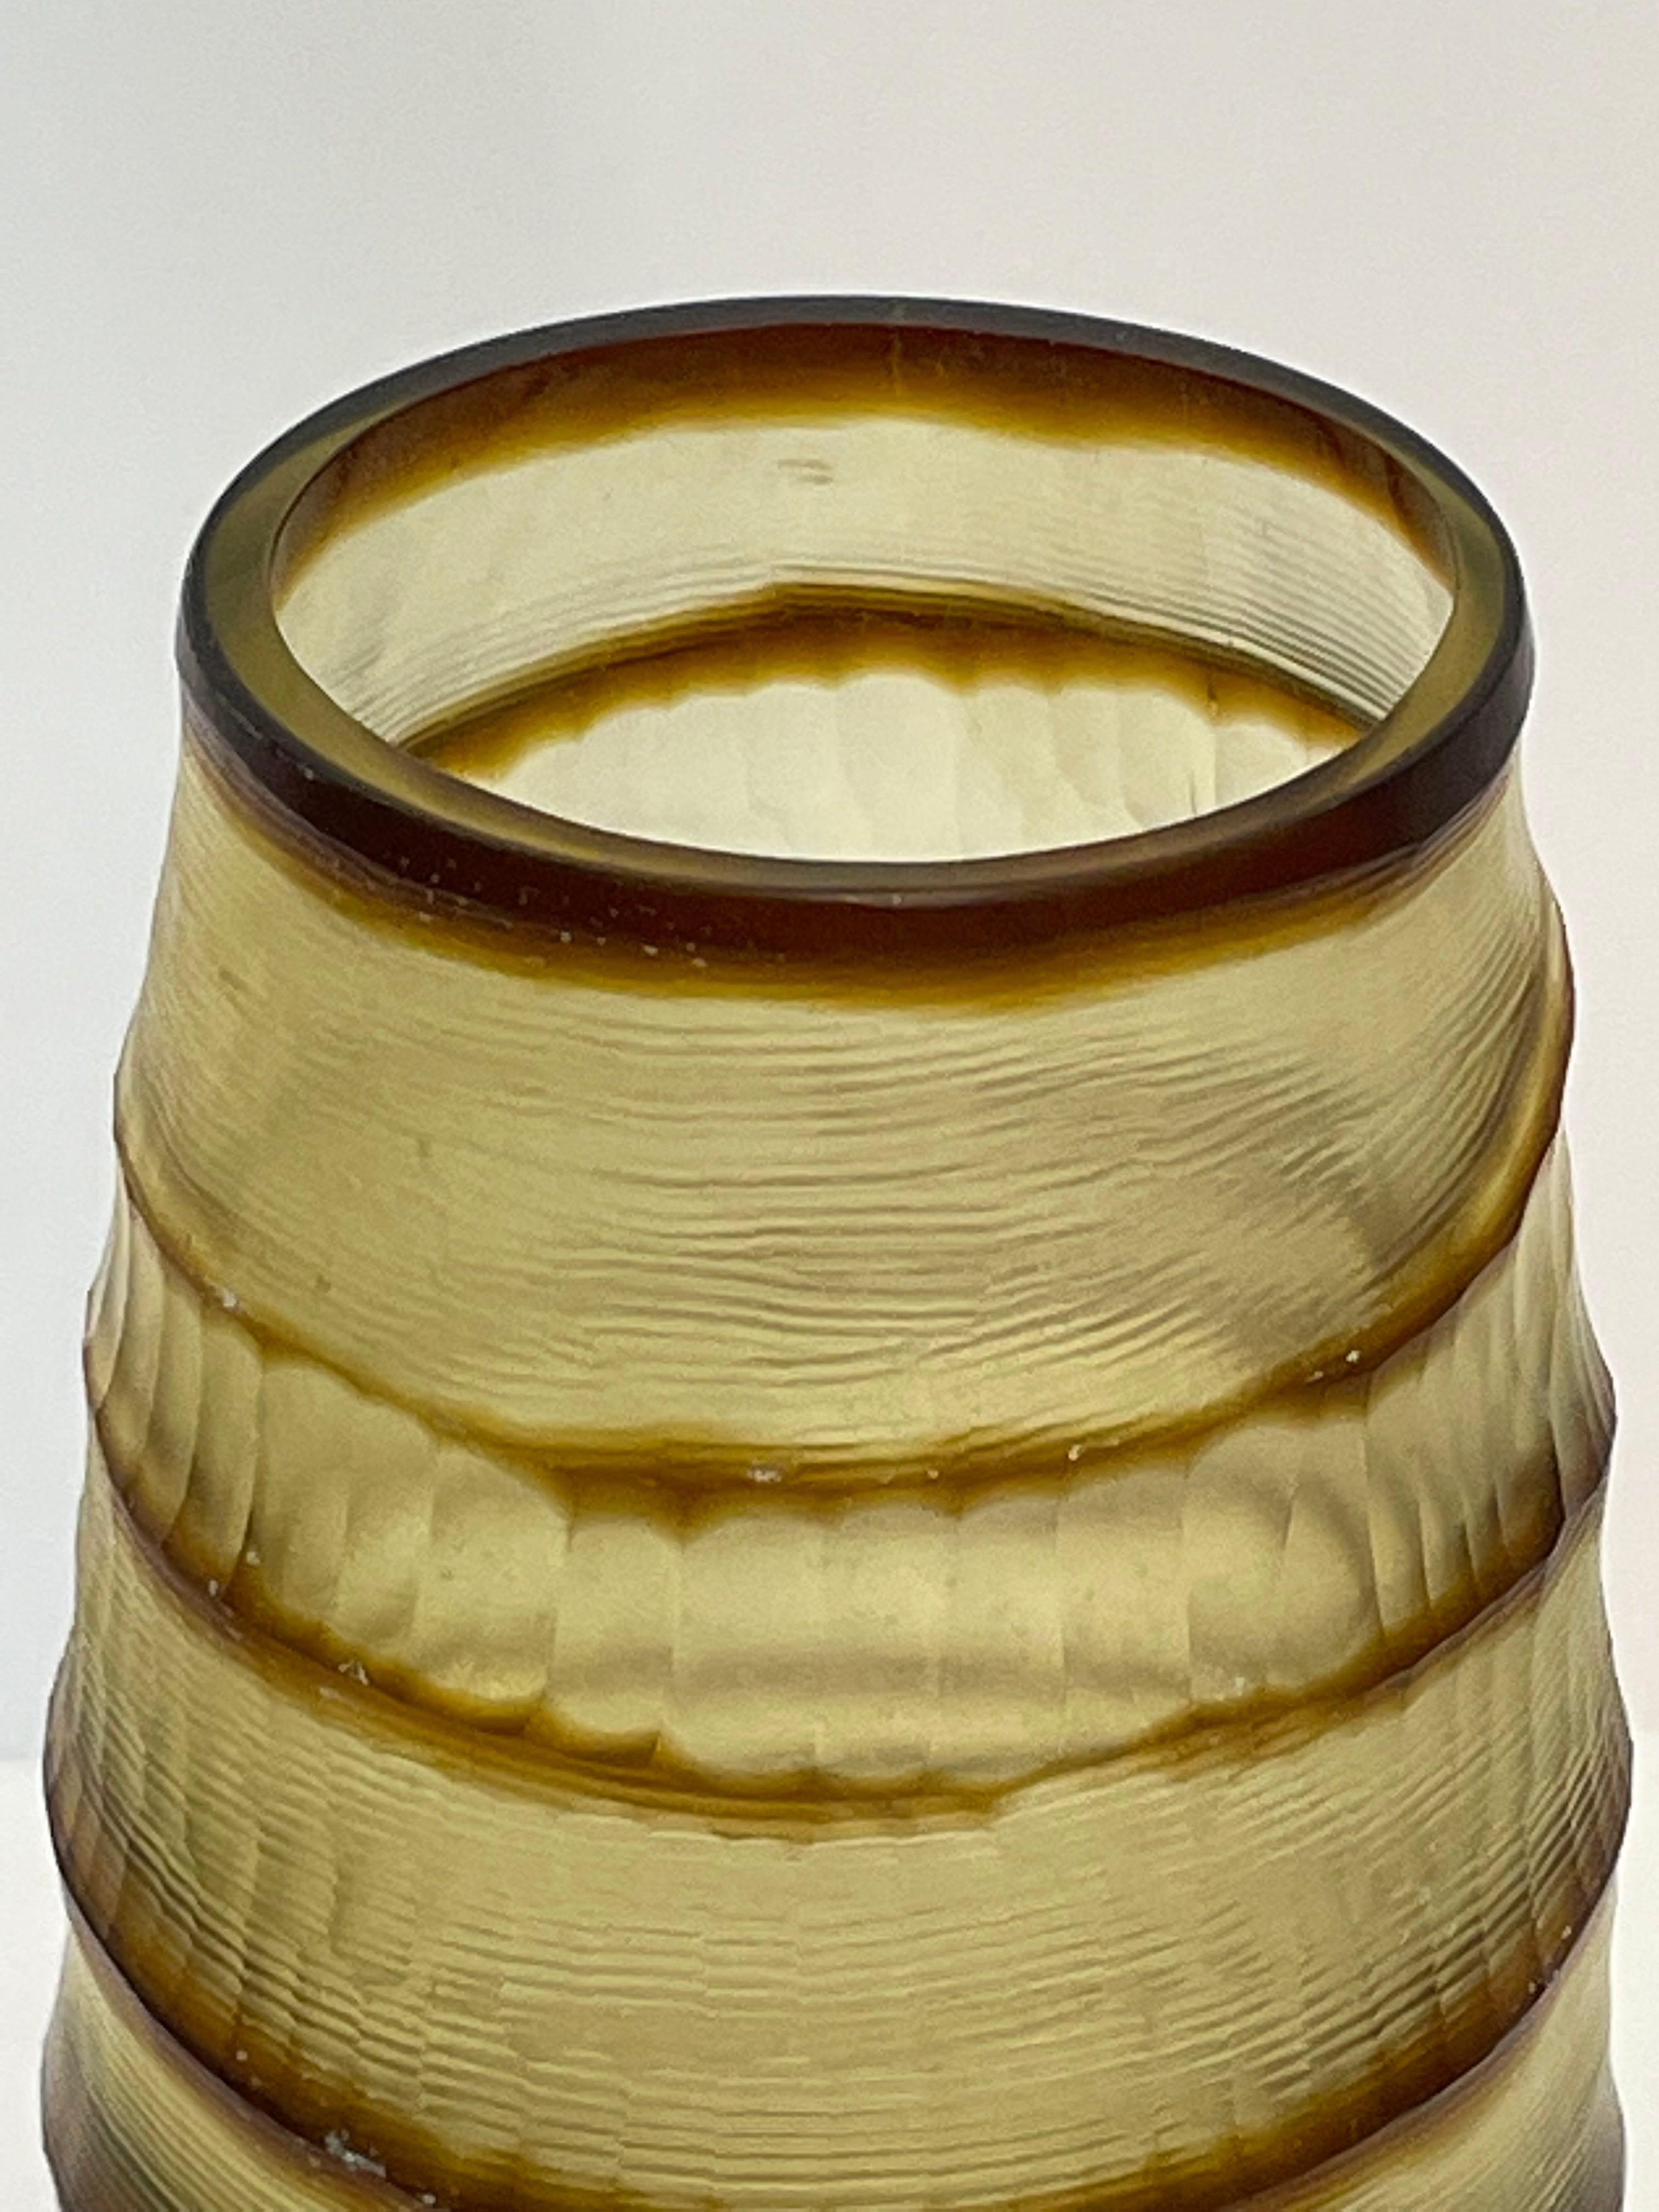 Romanian Brown Striped Glass Vase, Romania, Contemporary